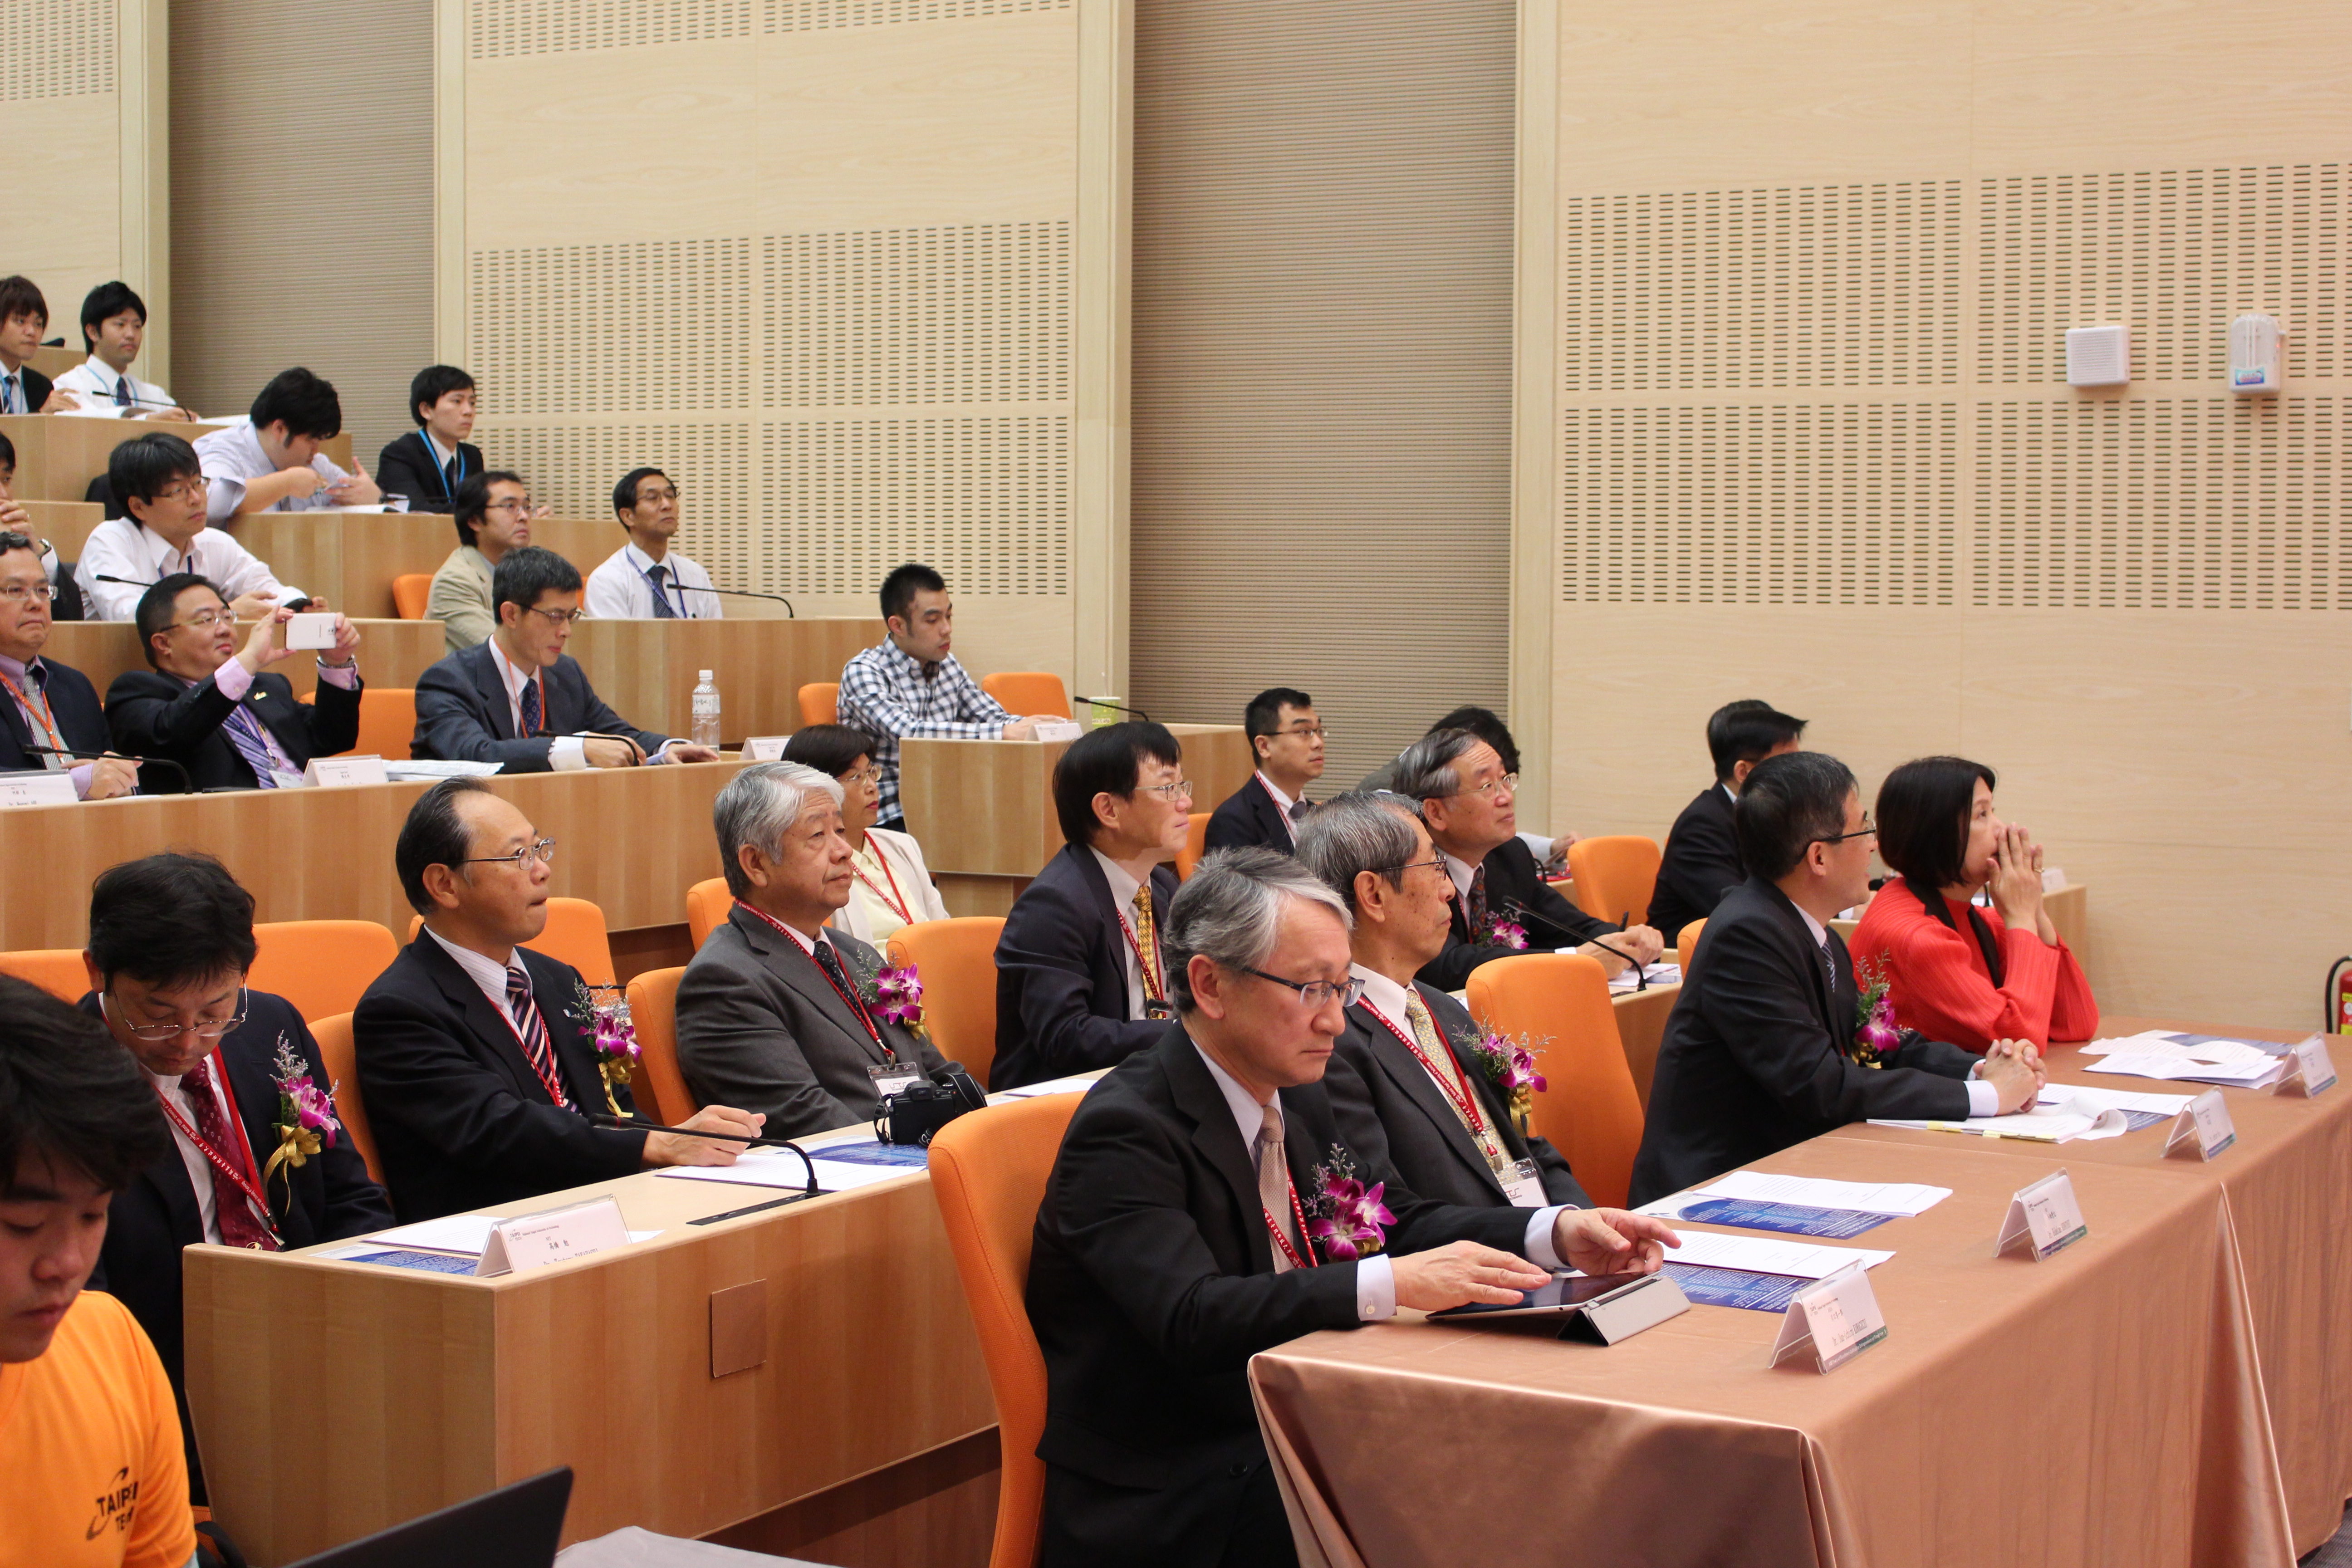 2014 ISTS 國際研討會